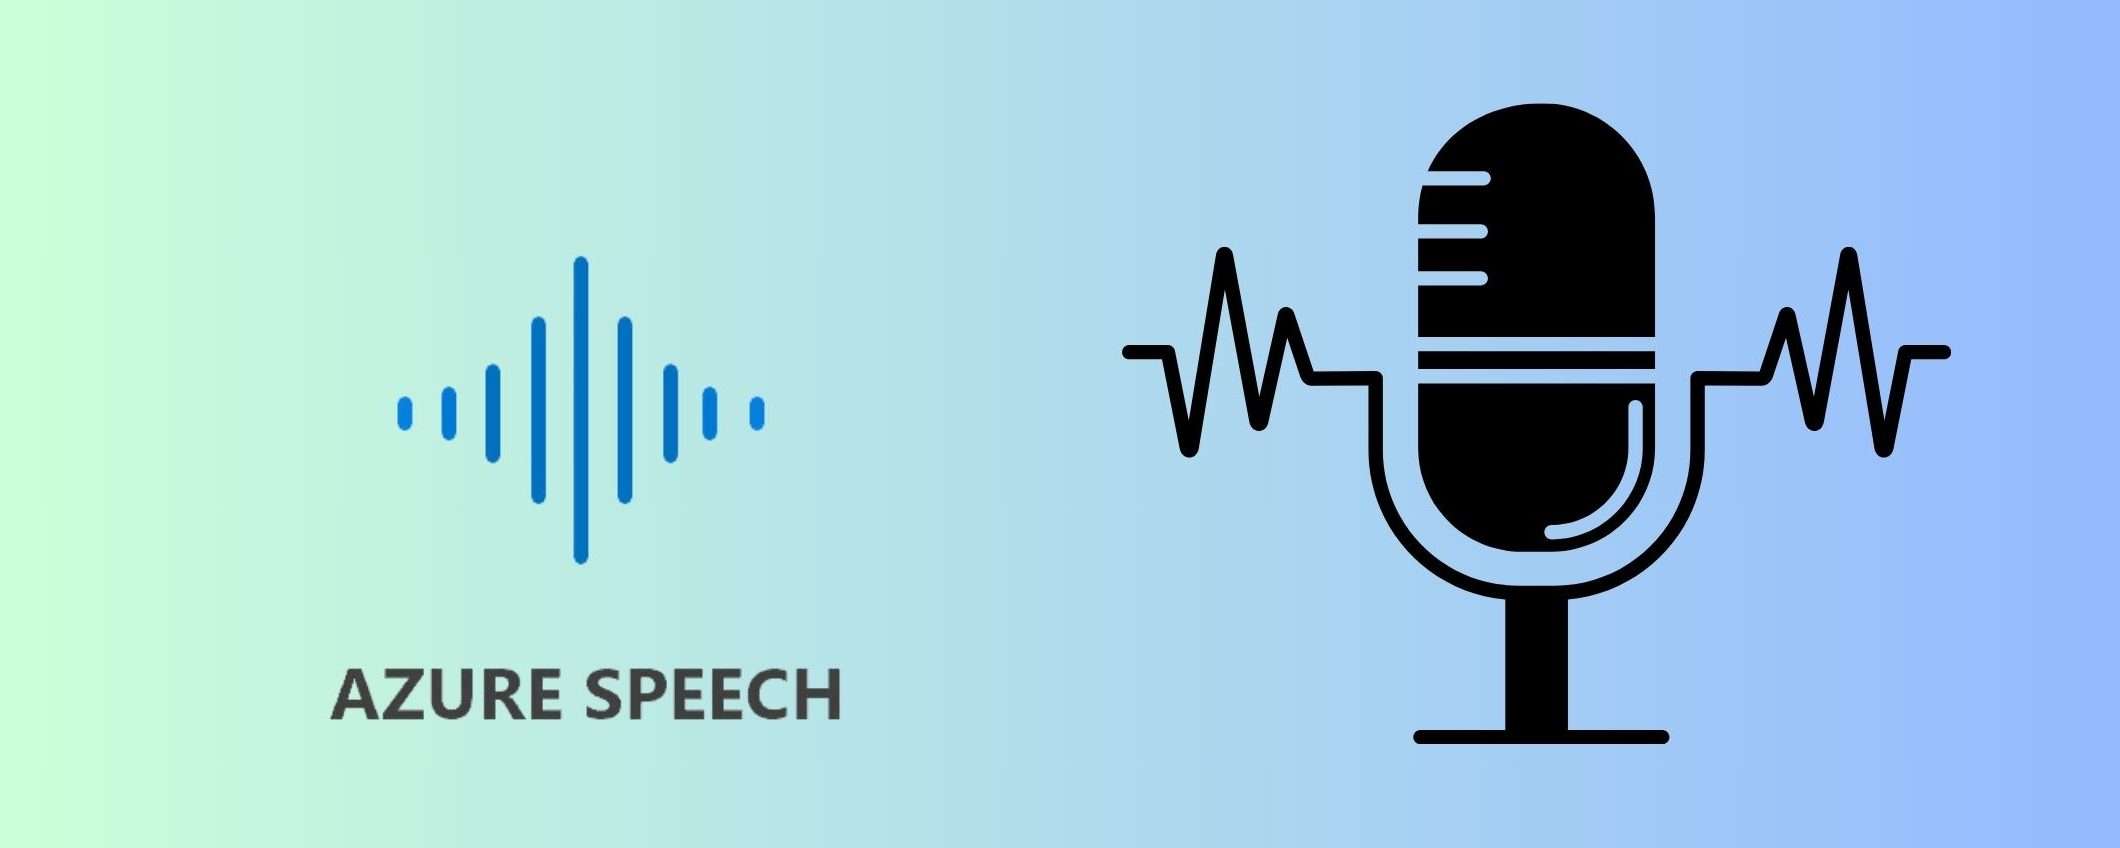 Microsoft lancia Azure AI Speech, l'AI che riproduce la voce